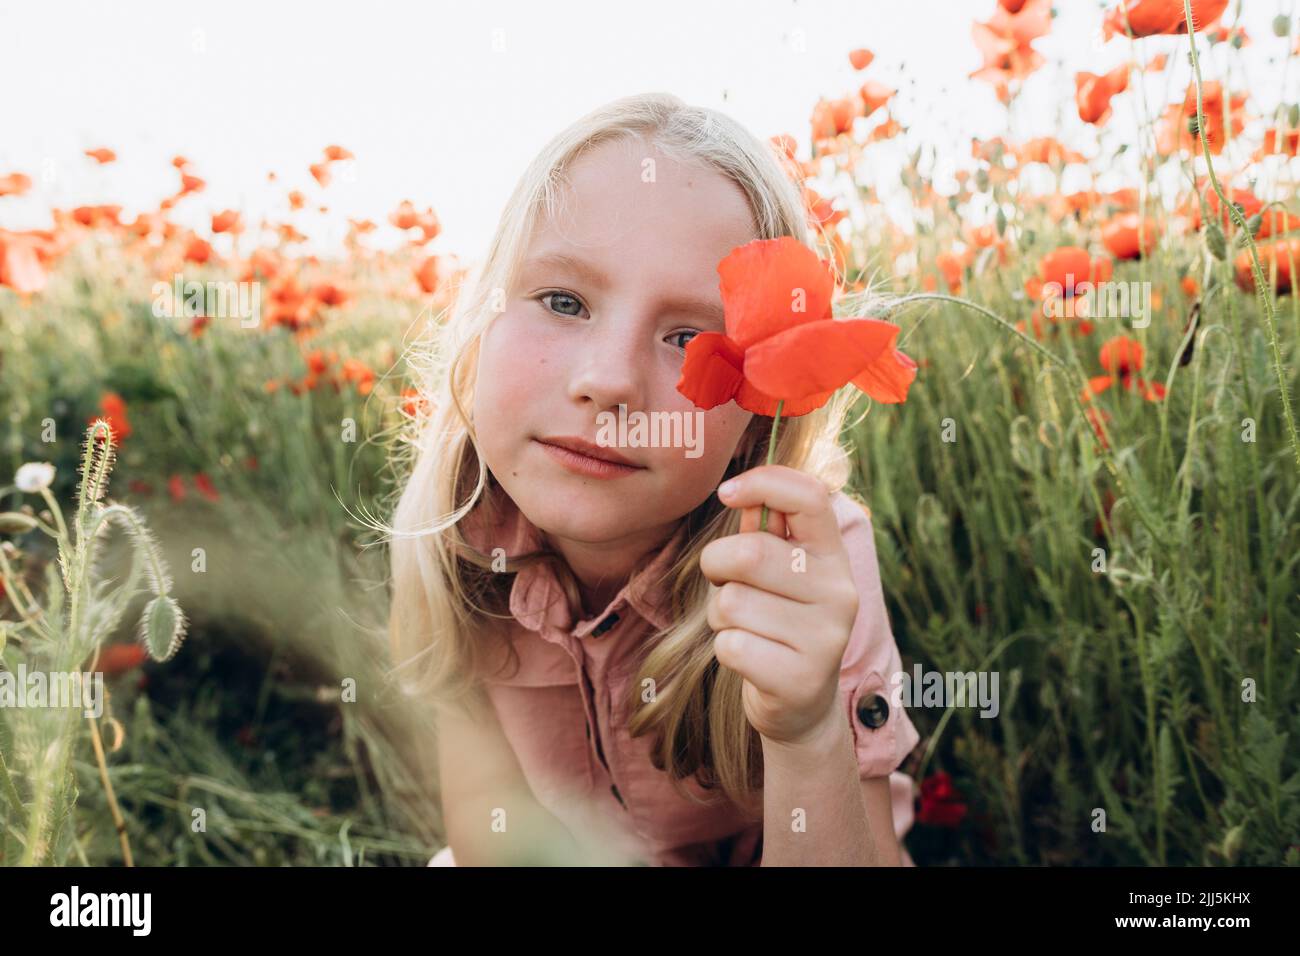 Blond girl holding red flower in poppy field Stock Photo